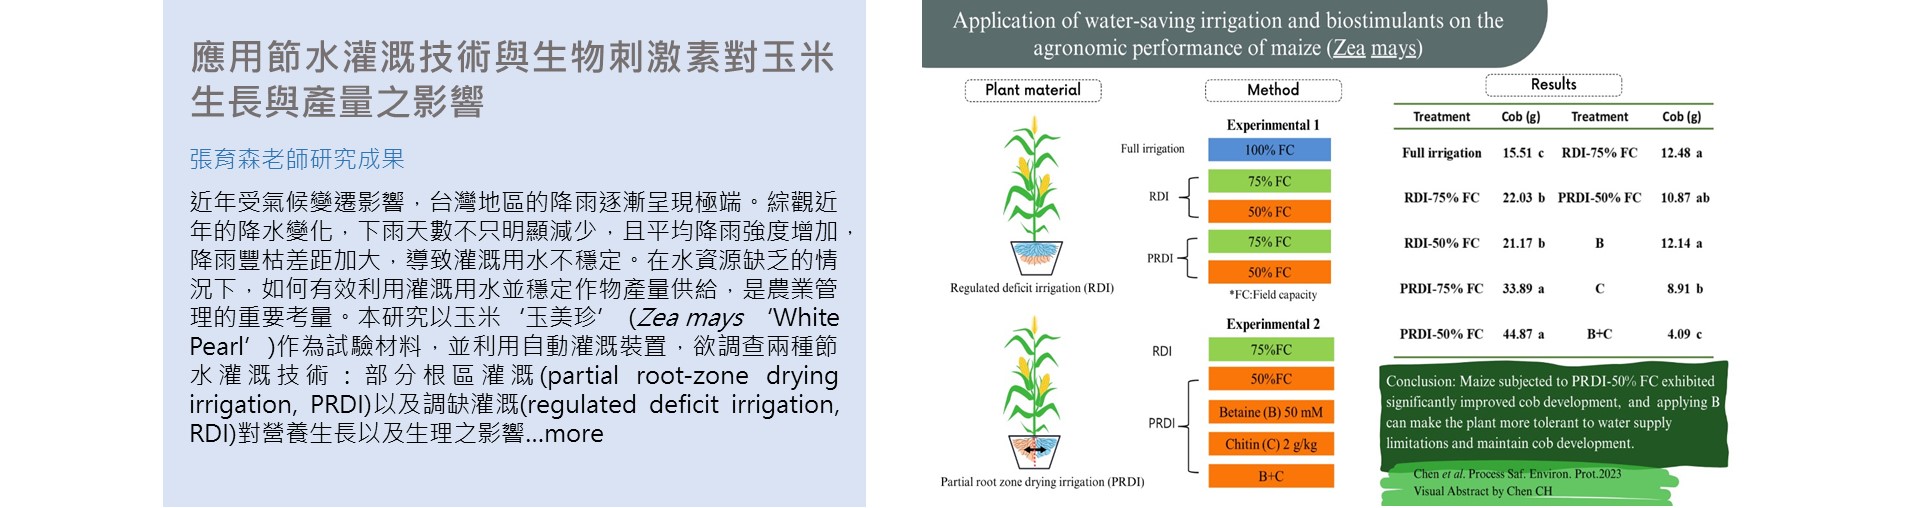 應用節水灌溉技術與生物刺激素對玉米生長與產量之影響